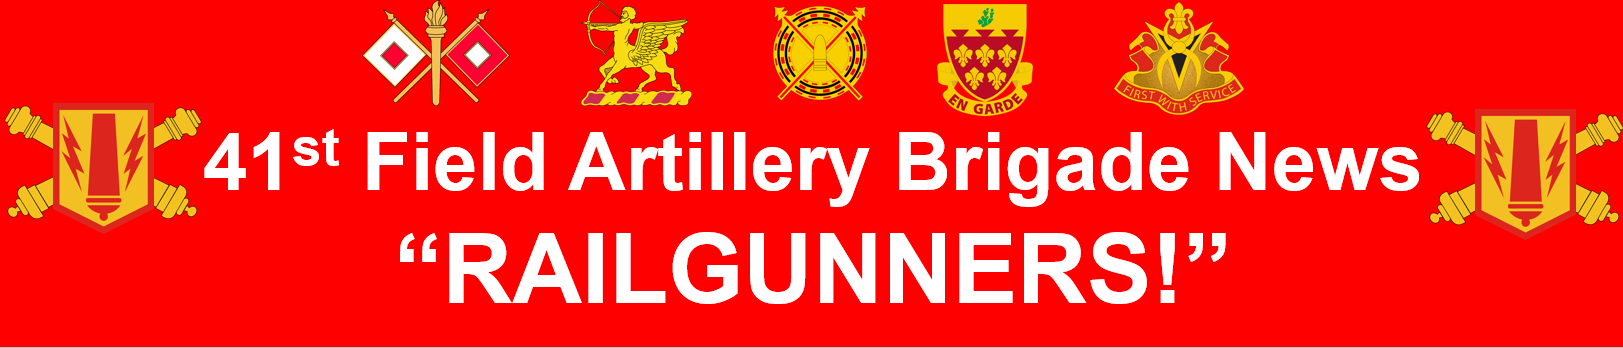 41st Field Artillery Brigade News